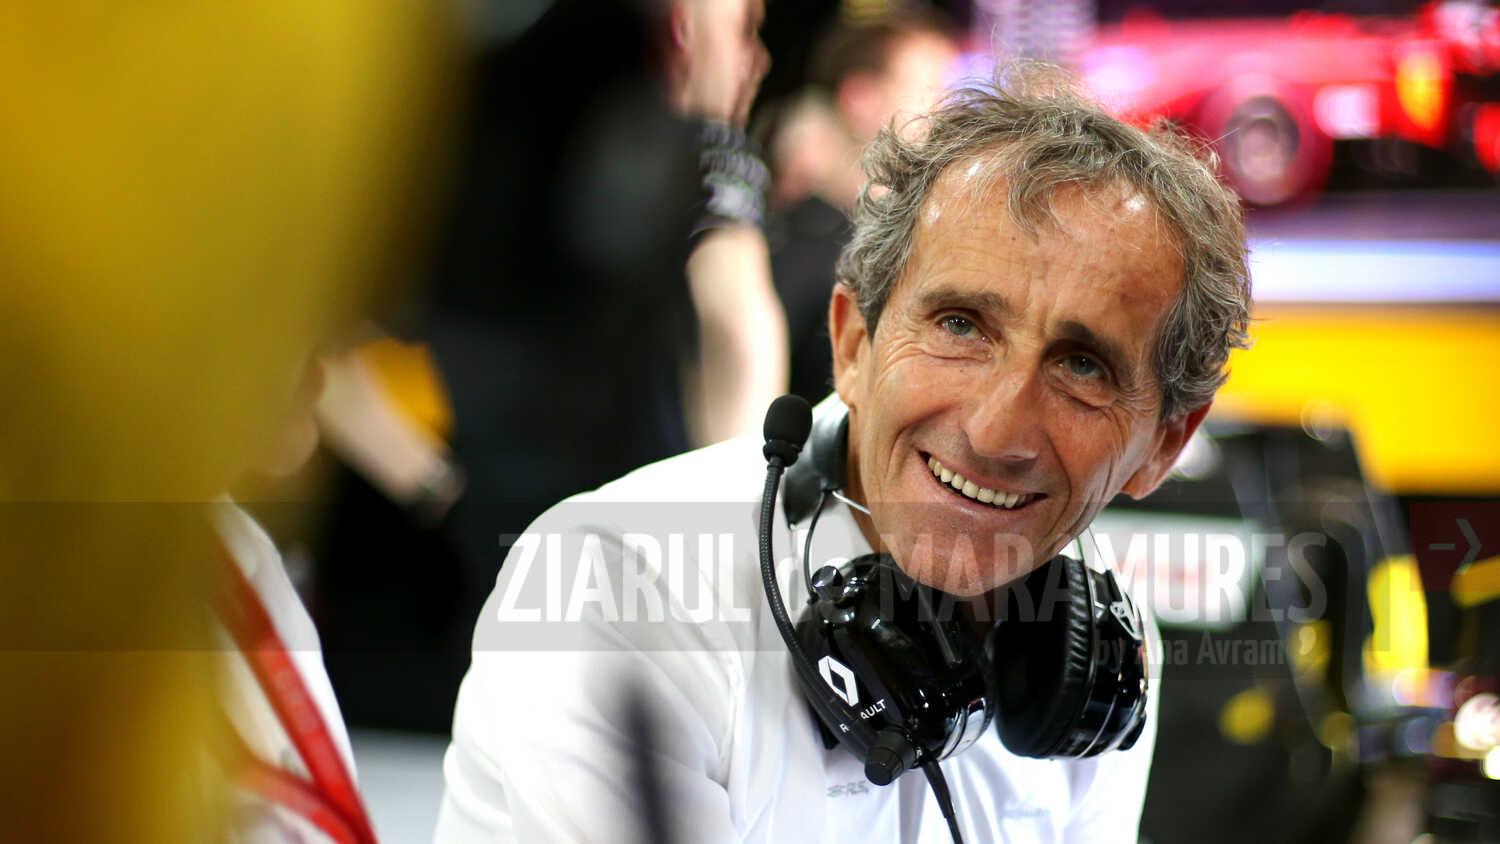 Auto-F1: Alain Prost a demisionat din funcția deținută la echipa franceză Alpine